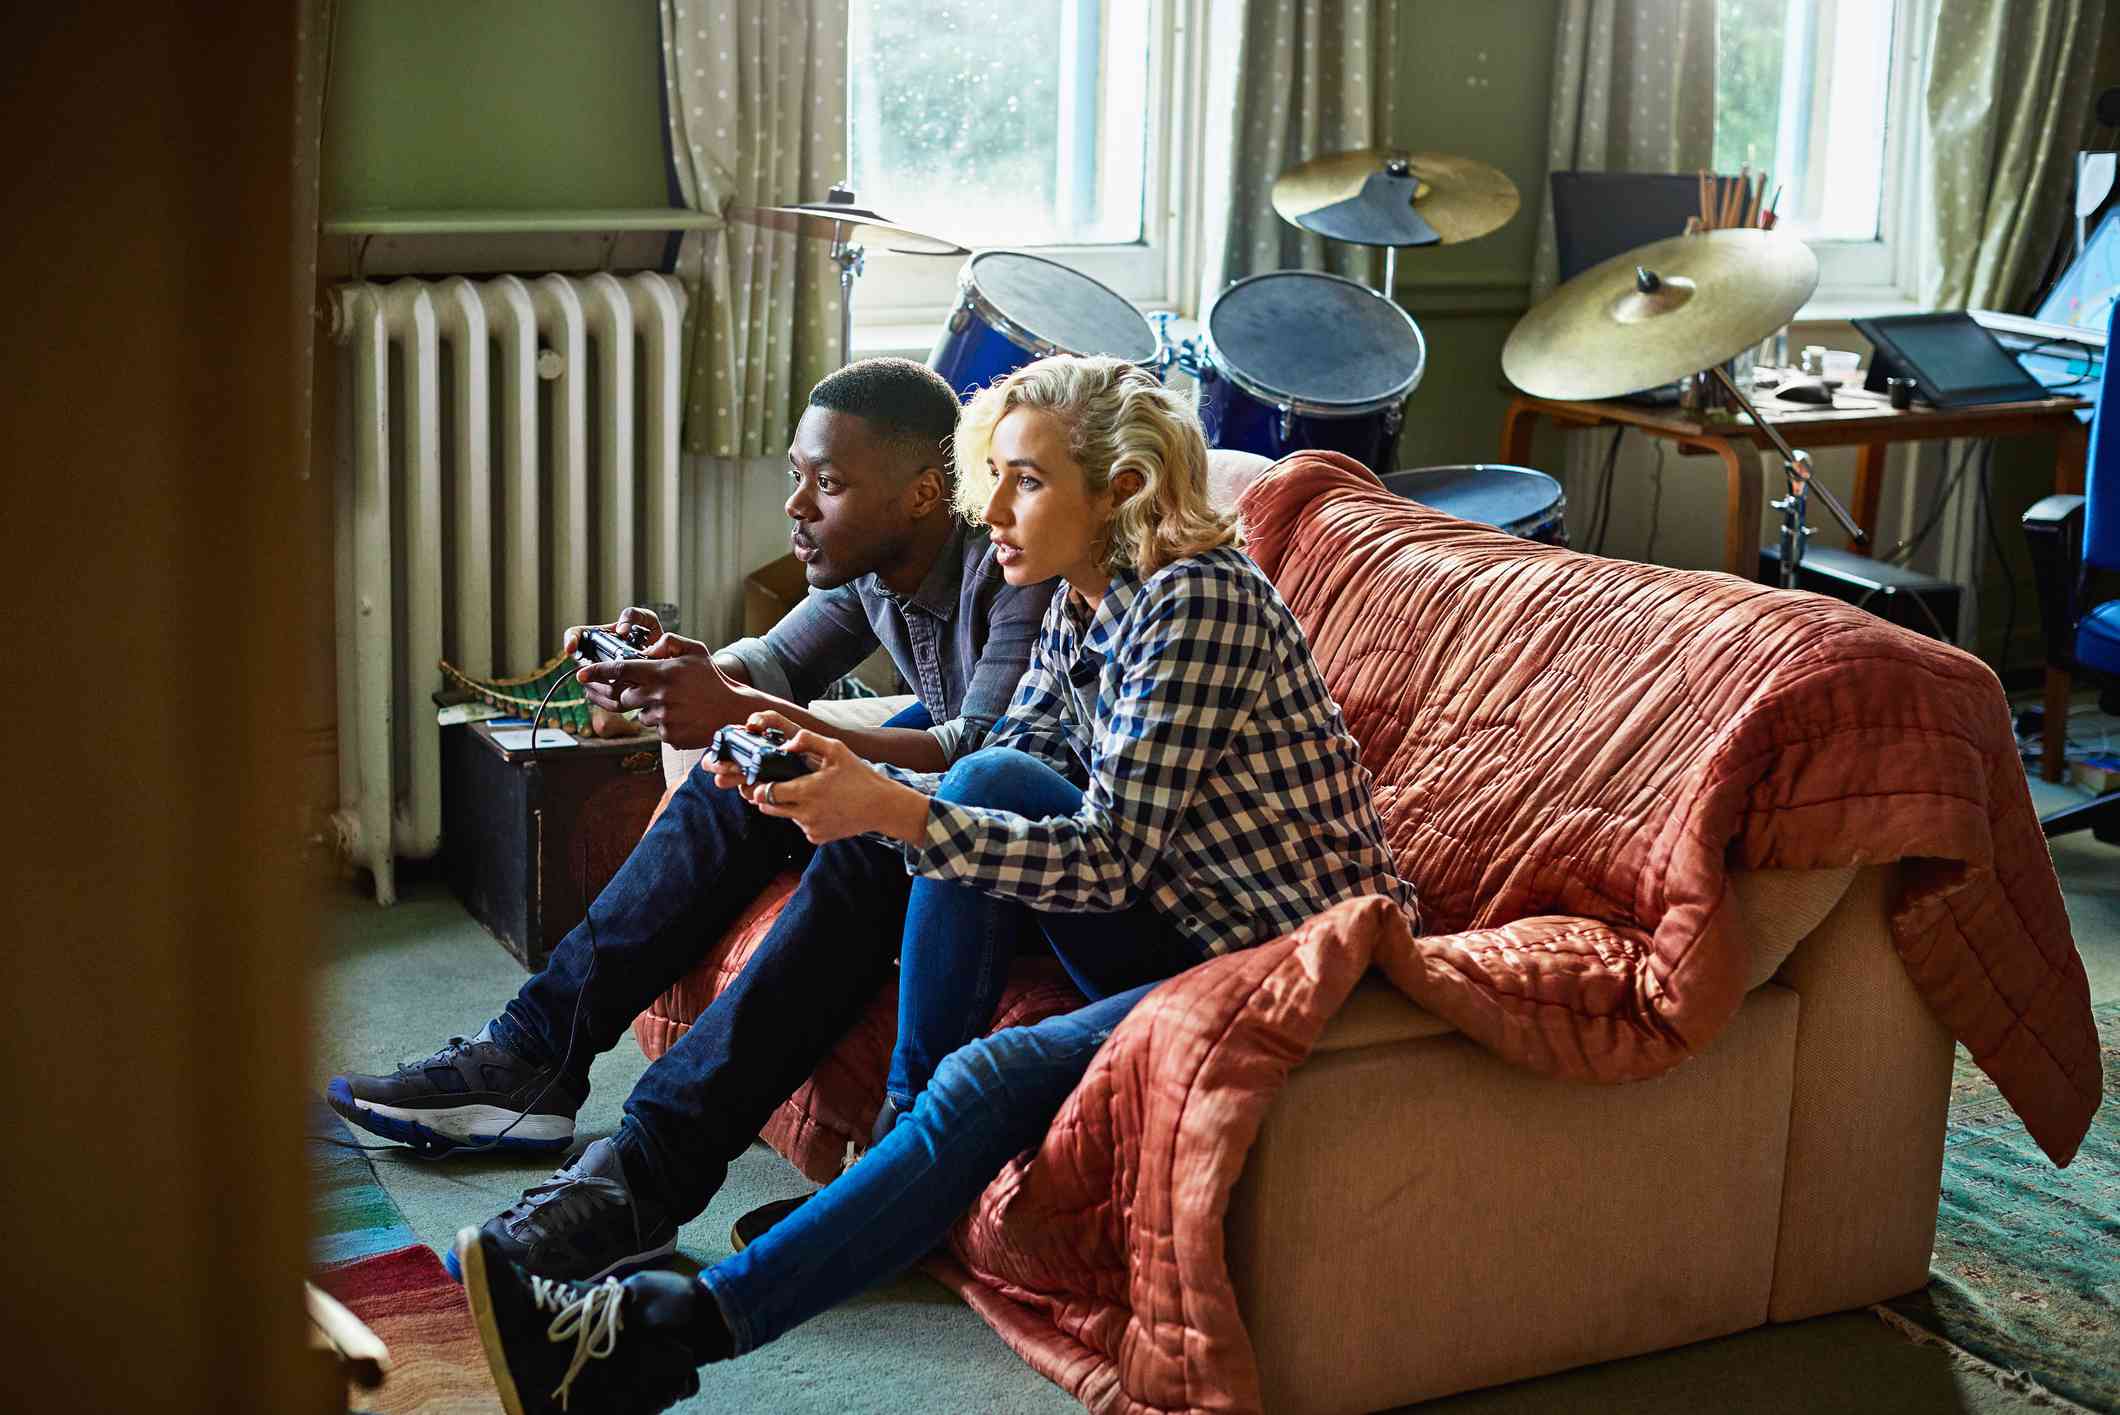 Двоє молодих людей, що грають у консольні відеоігри, сидячи на дивані в невеликій квартирі.